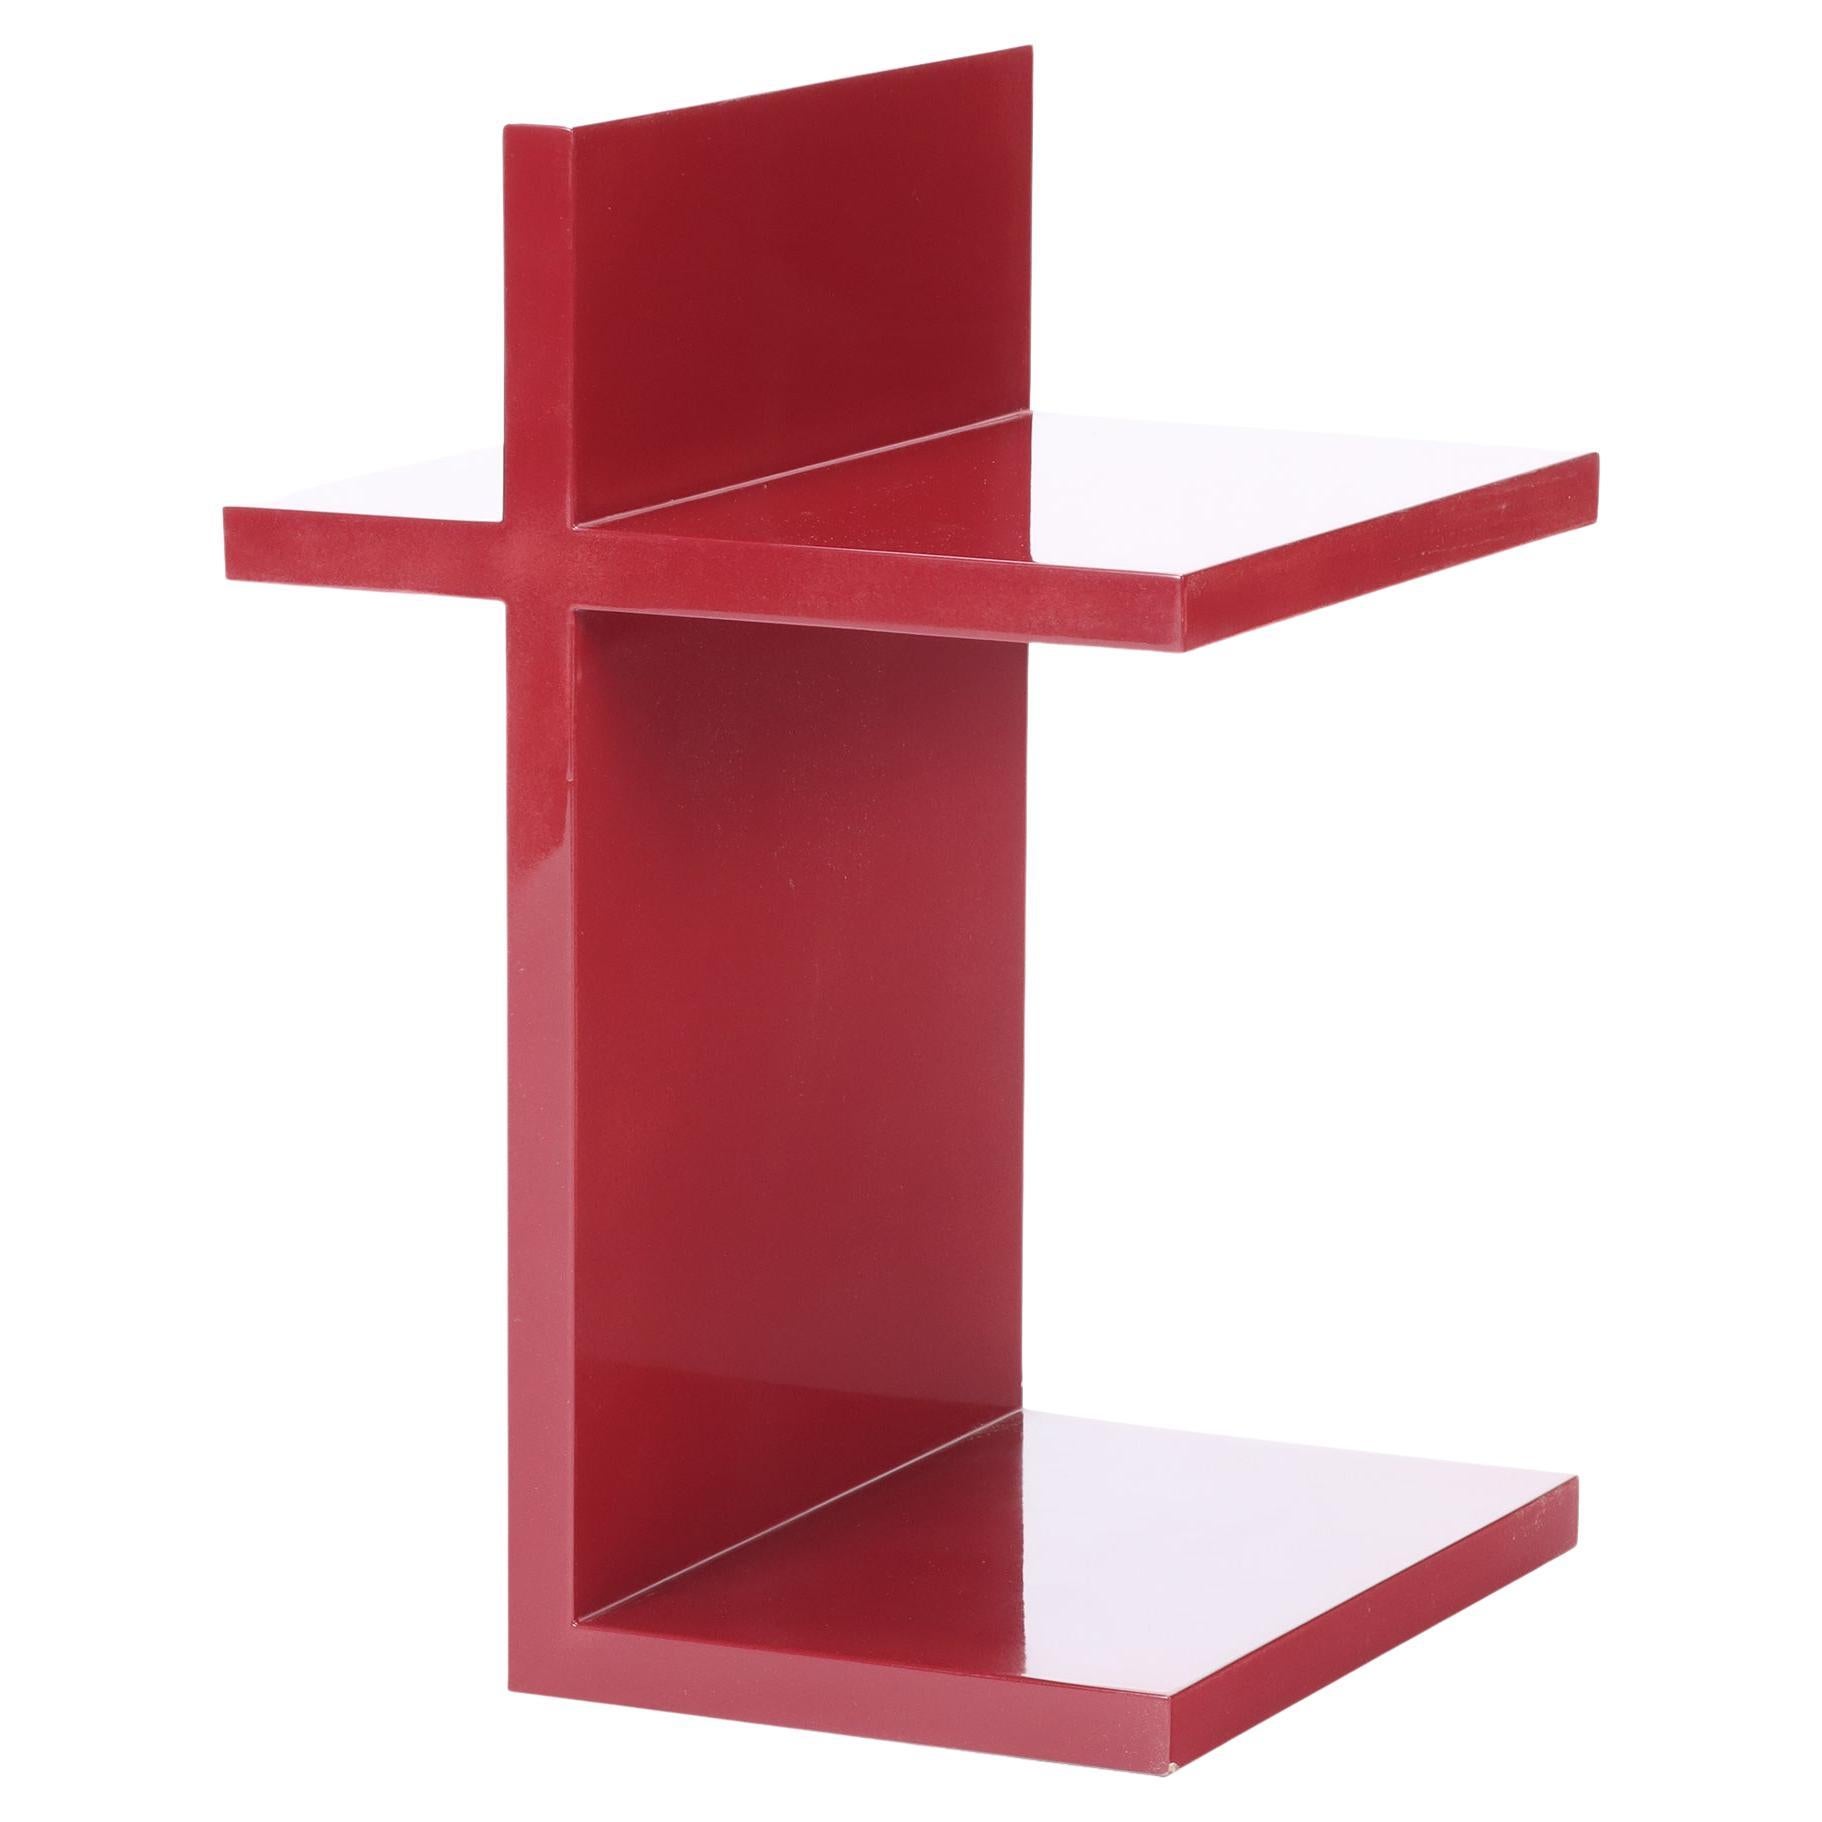 Table d'appoint en laque rouge « T » conçue par Maximilian Eicke pour Max ID NY